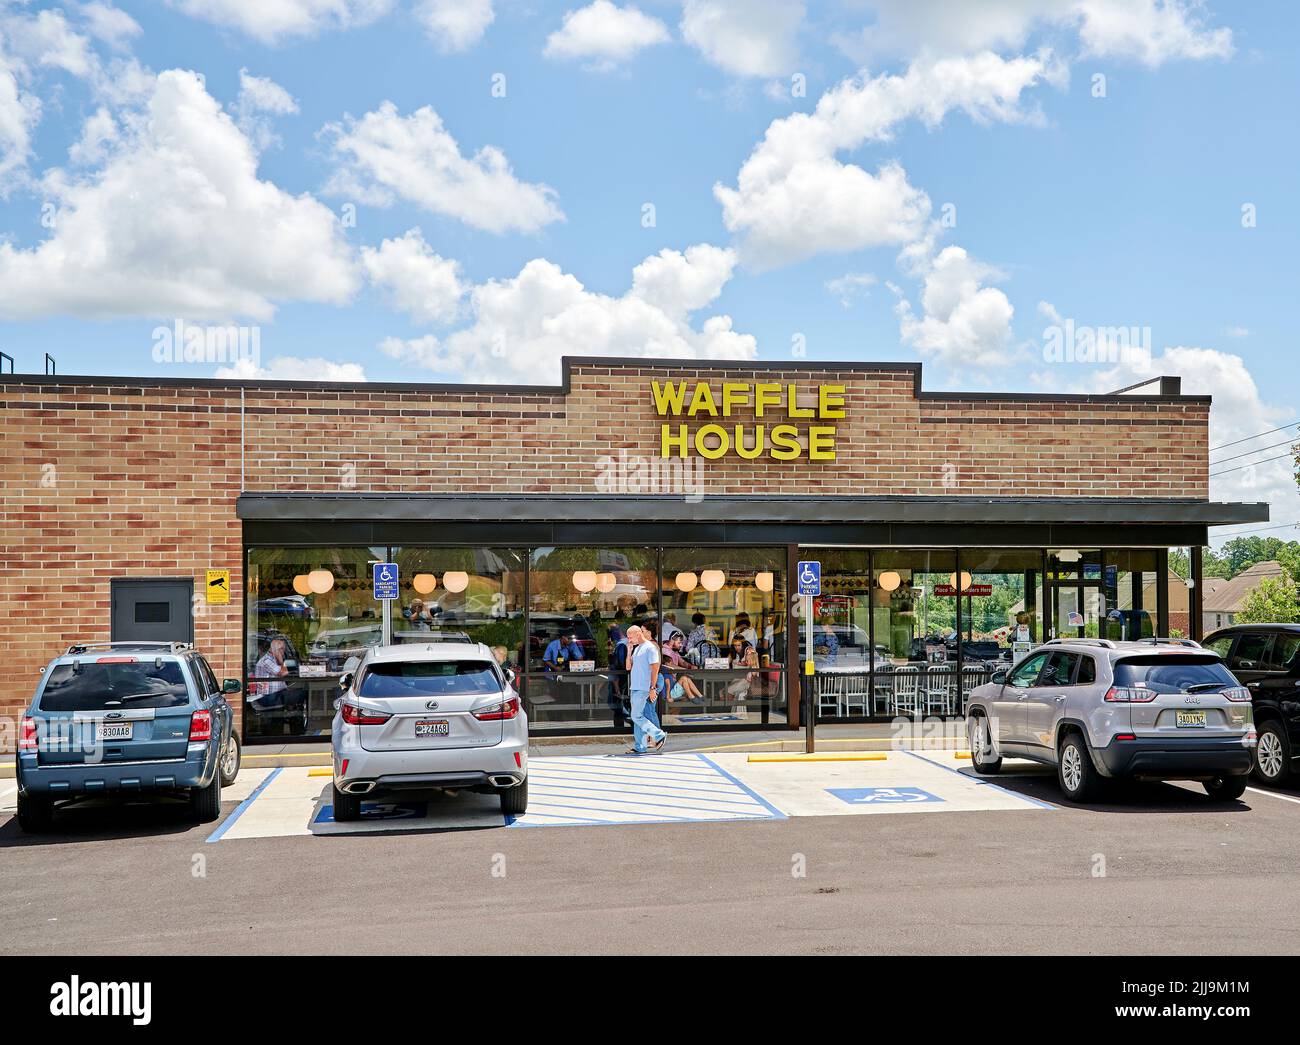 La gente sale de un Waffle House, un pequeño restaurante familiar de desayuno, entrada frontal exterior en Pike Road Alabama, Estados Unidos. Foto de stock